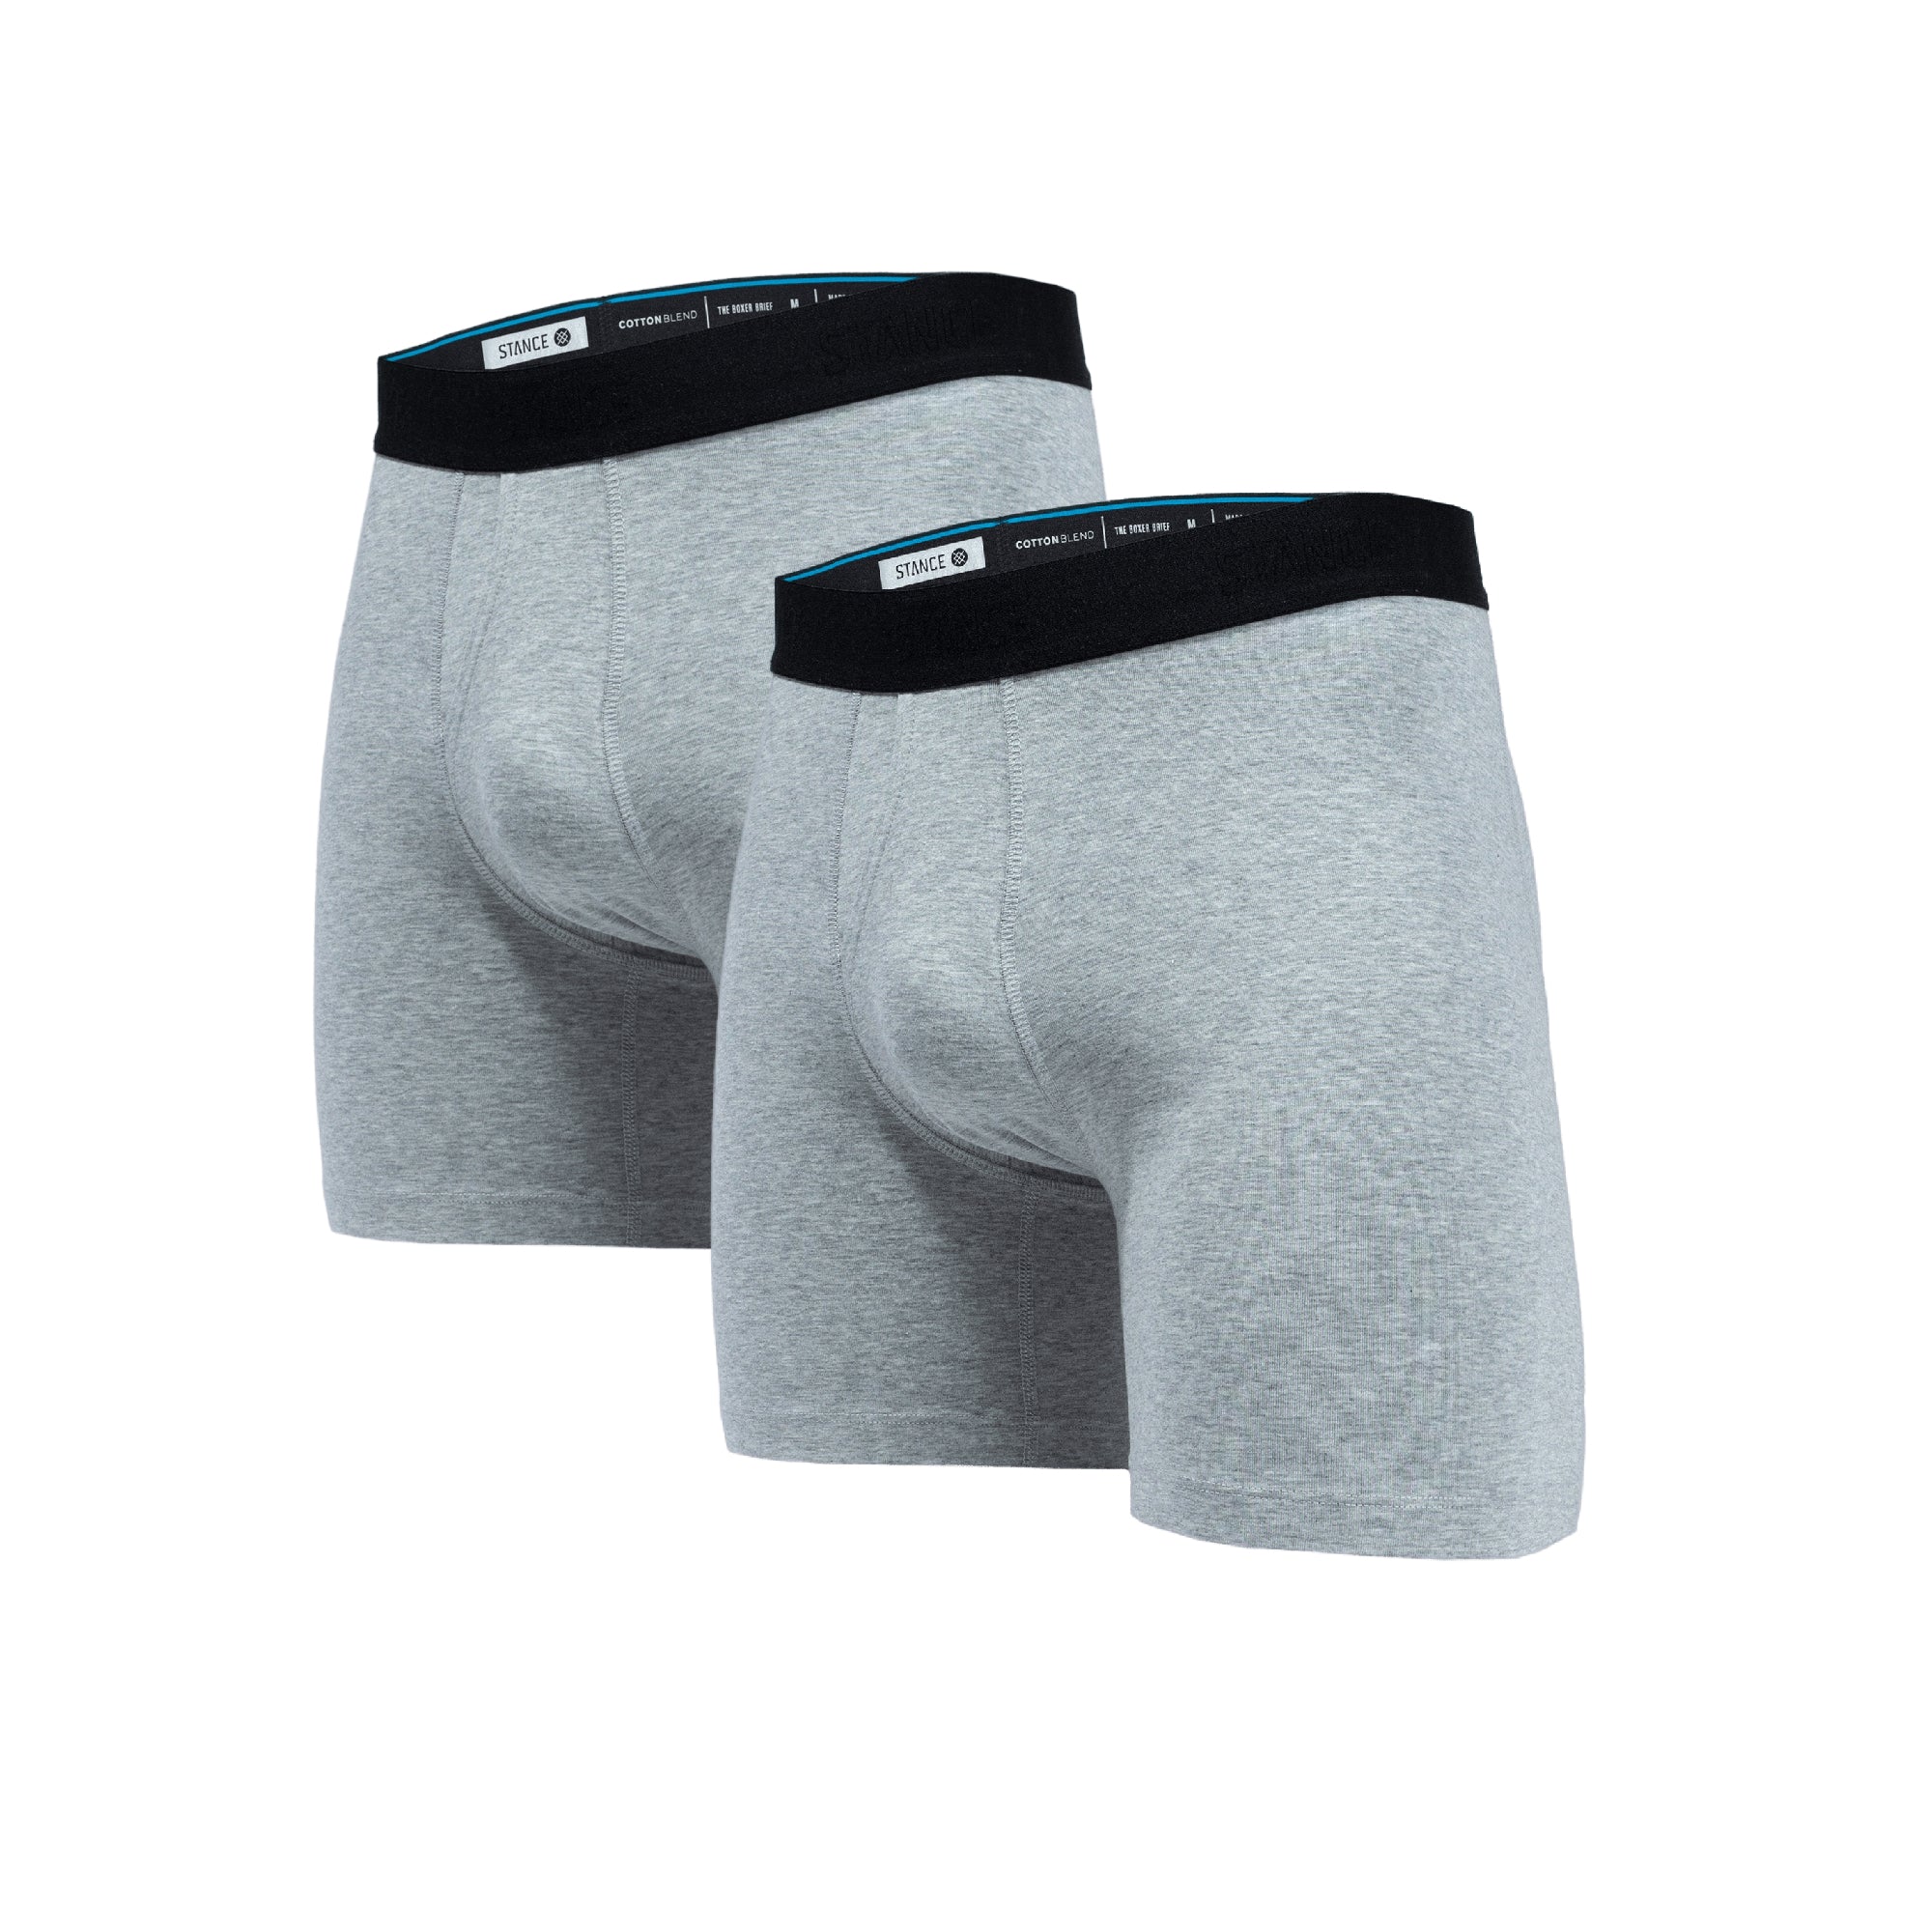 Stance Men's Pascals Cotton Boxer Briefs, Men's Underwear